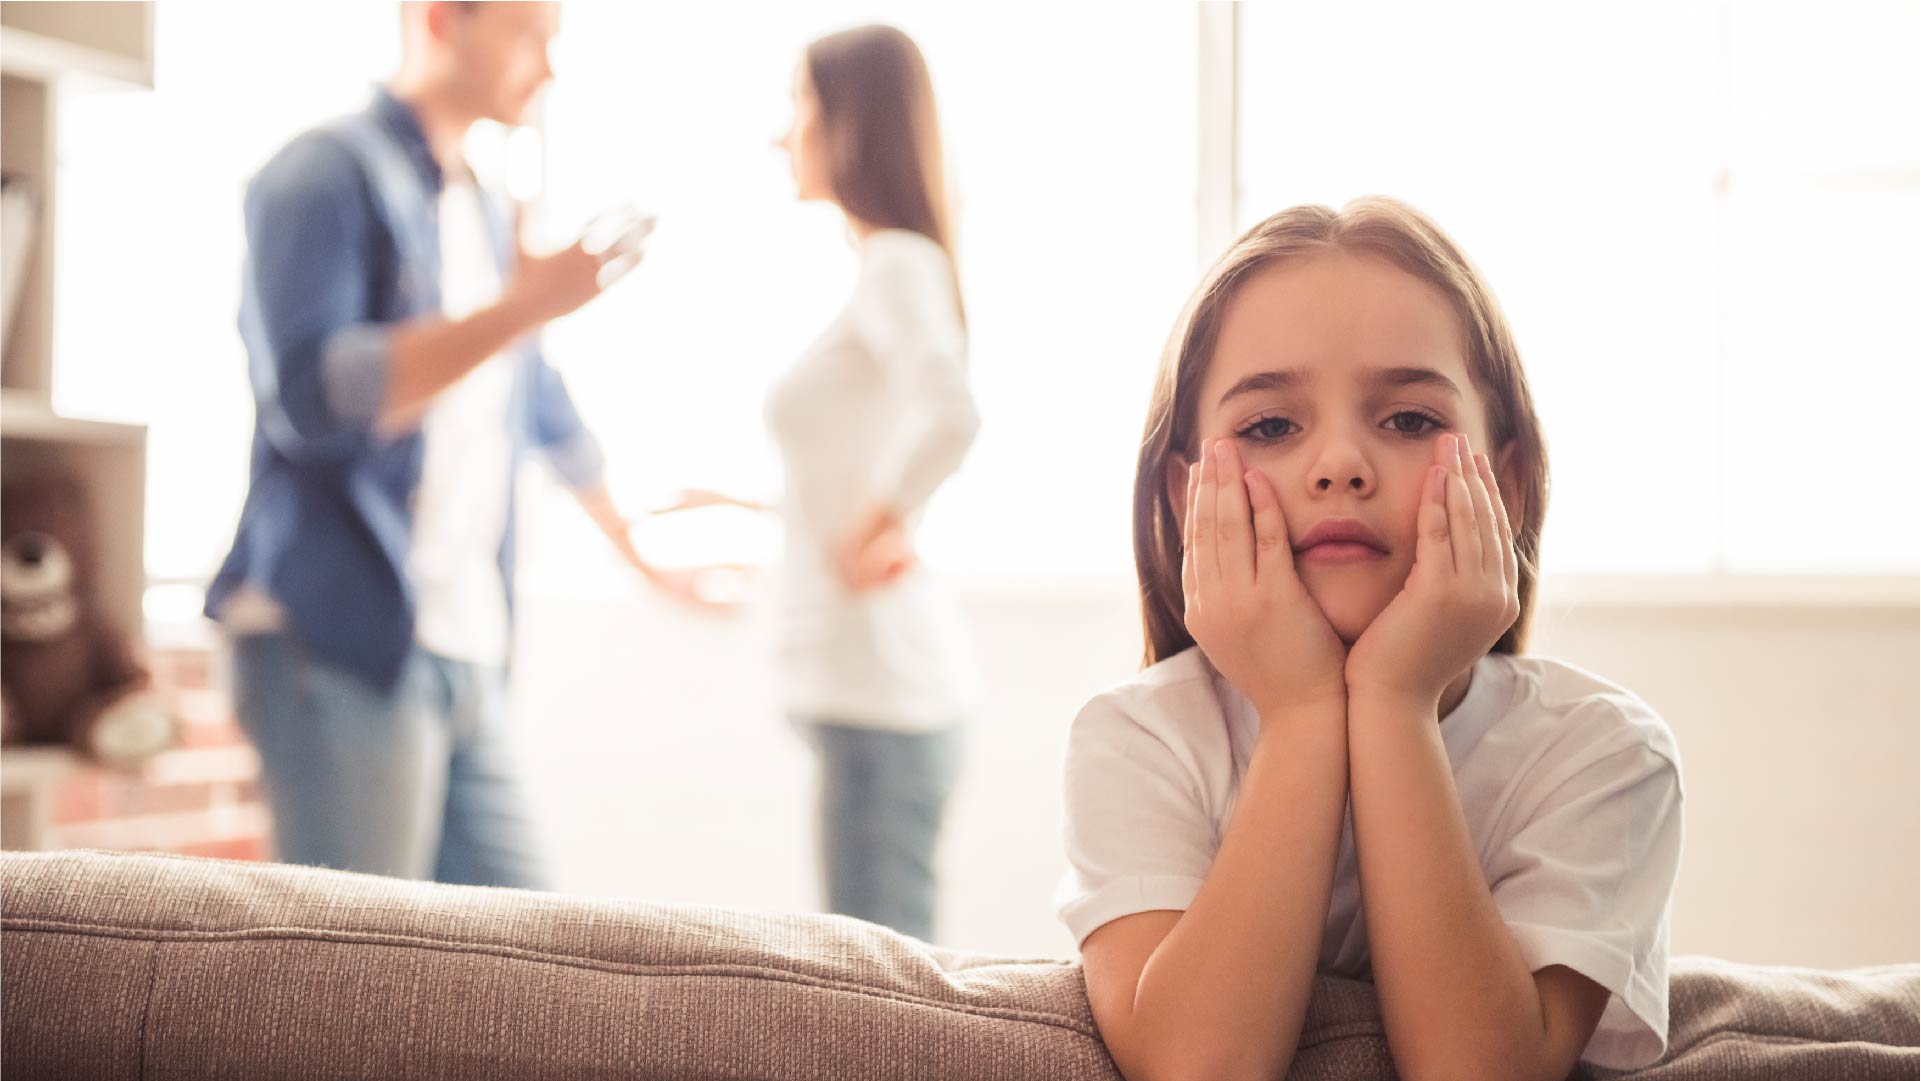 Een klein meisje wacht bedroefd tot haar ouders stoppen met ruzie maken